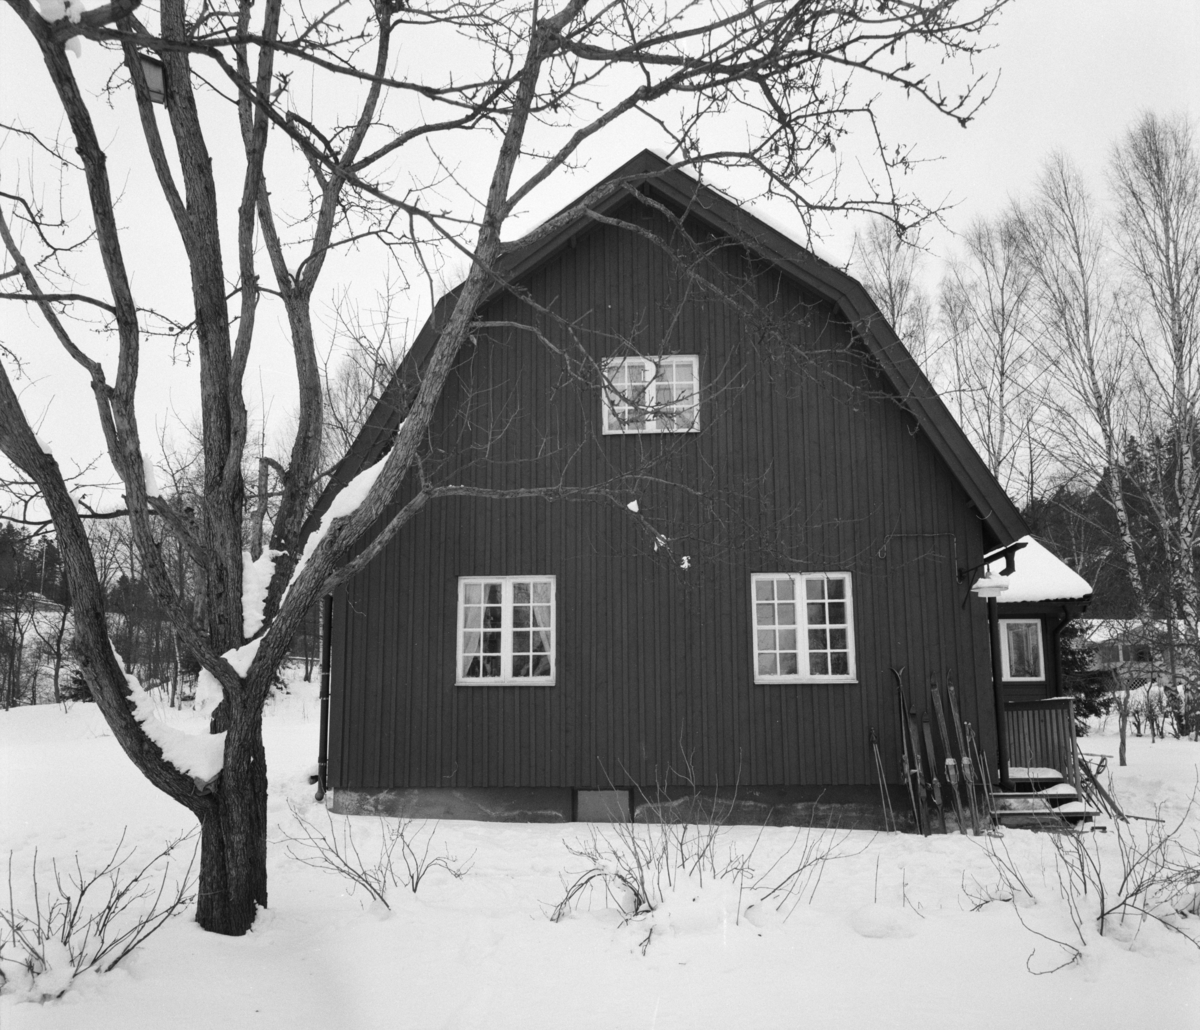 villa Ahlgren
Exteriör, trävilla i snölandskap, i förgrunden träd.